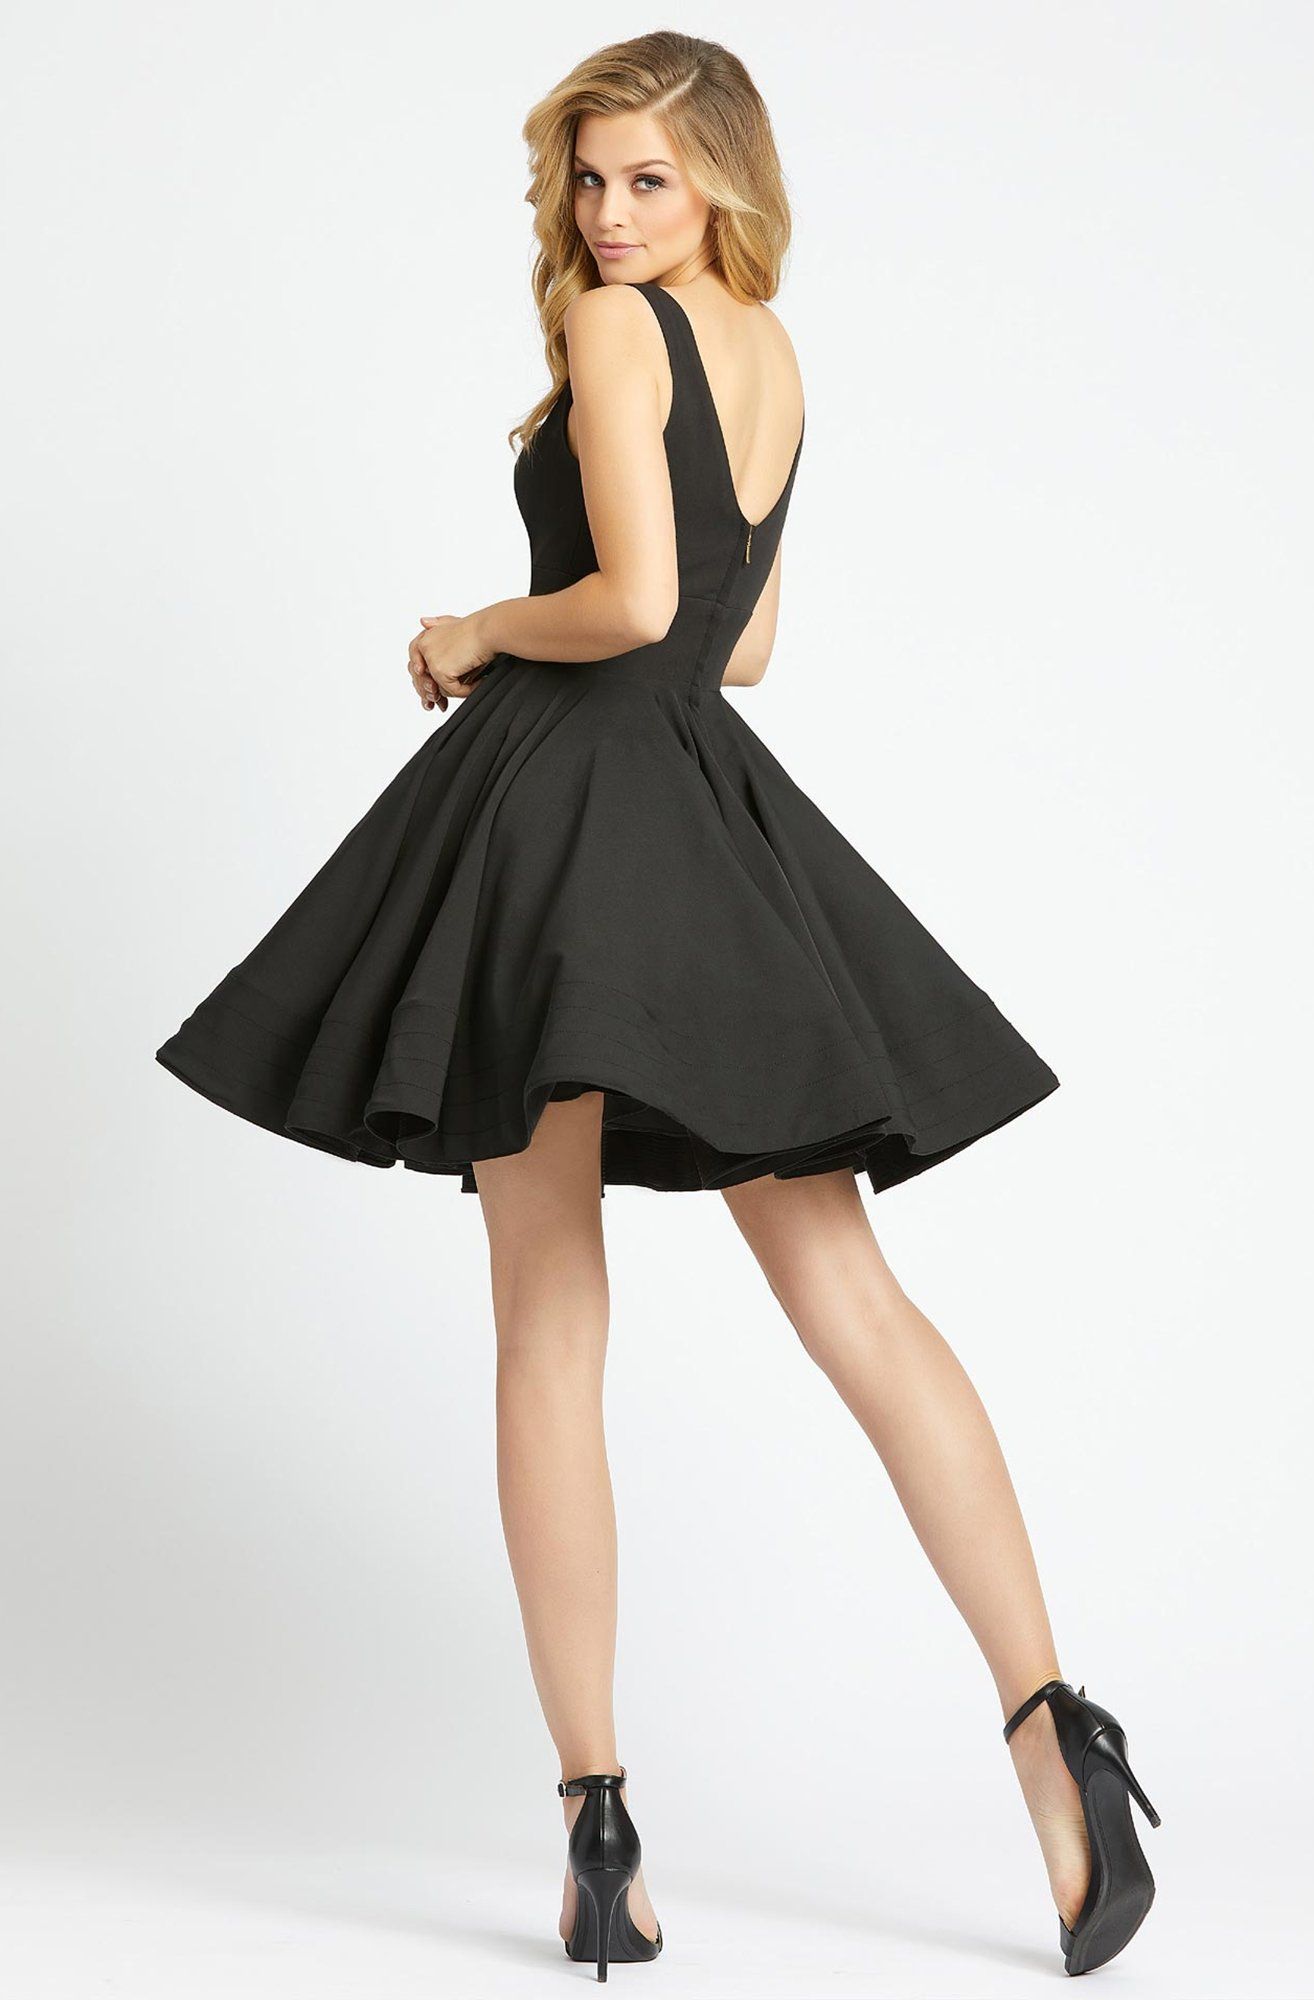 Ieena Duggal - 48478I Classic V-Neck Flutter Dress - Ieena Duggal - 48478I Classic V-Neck Flutter Dress -   17 style Dress classic ideas